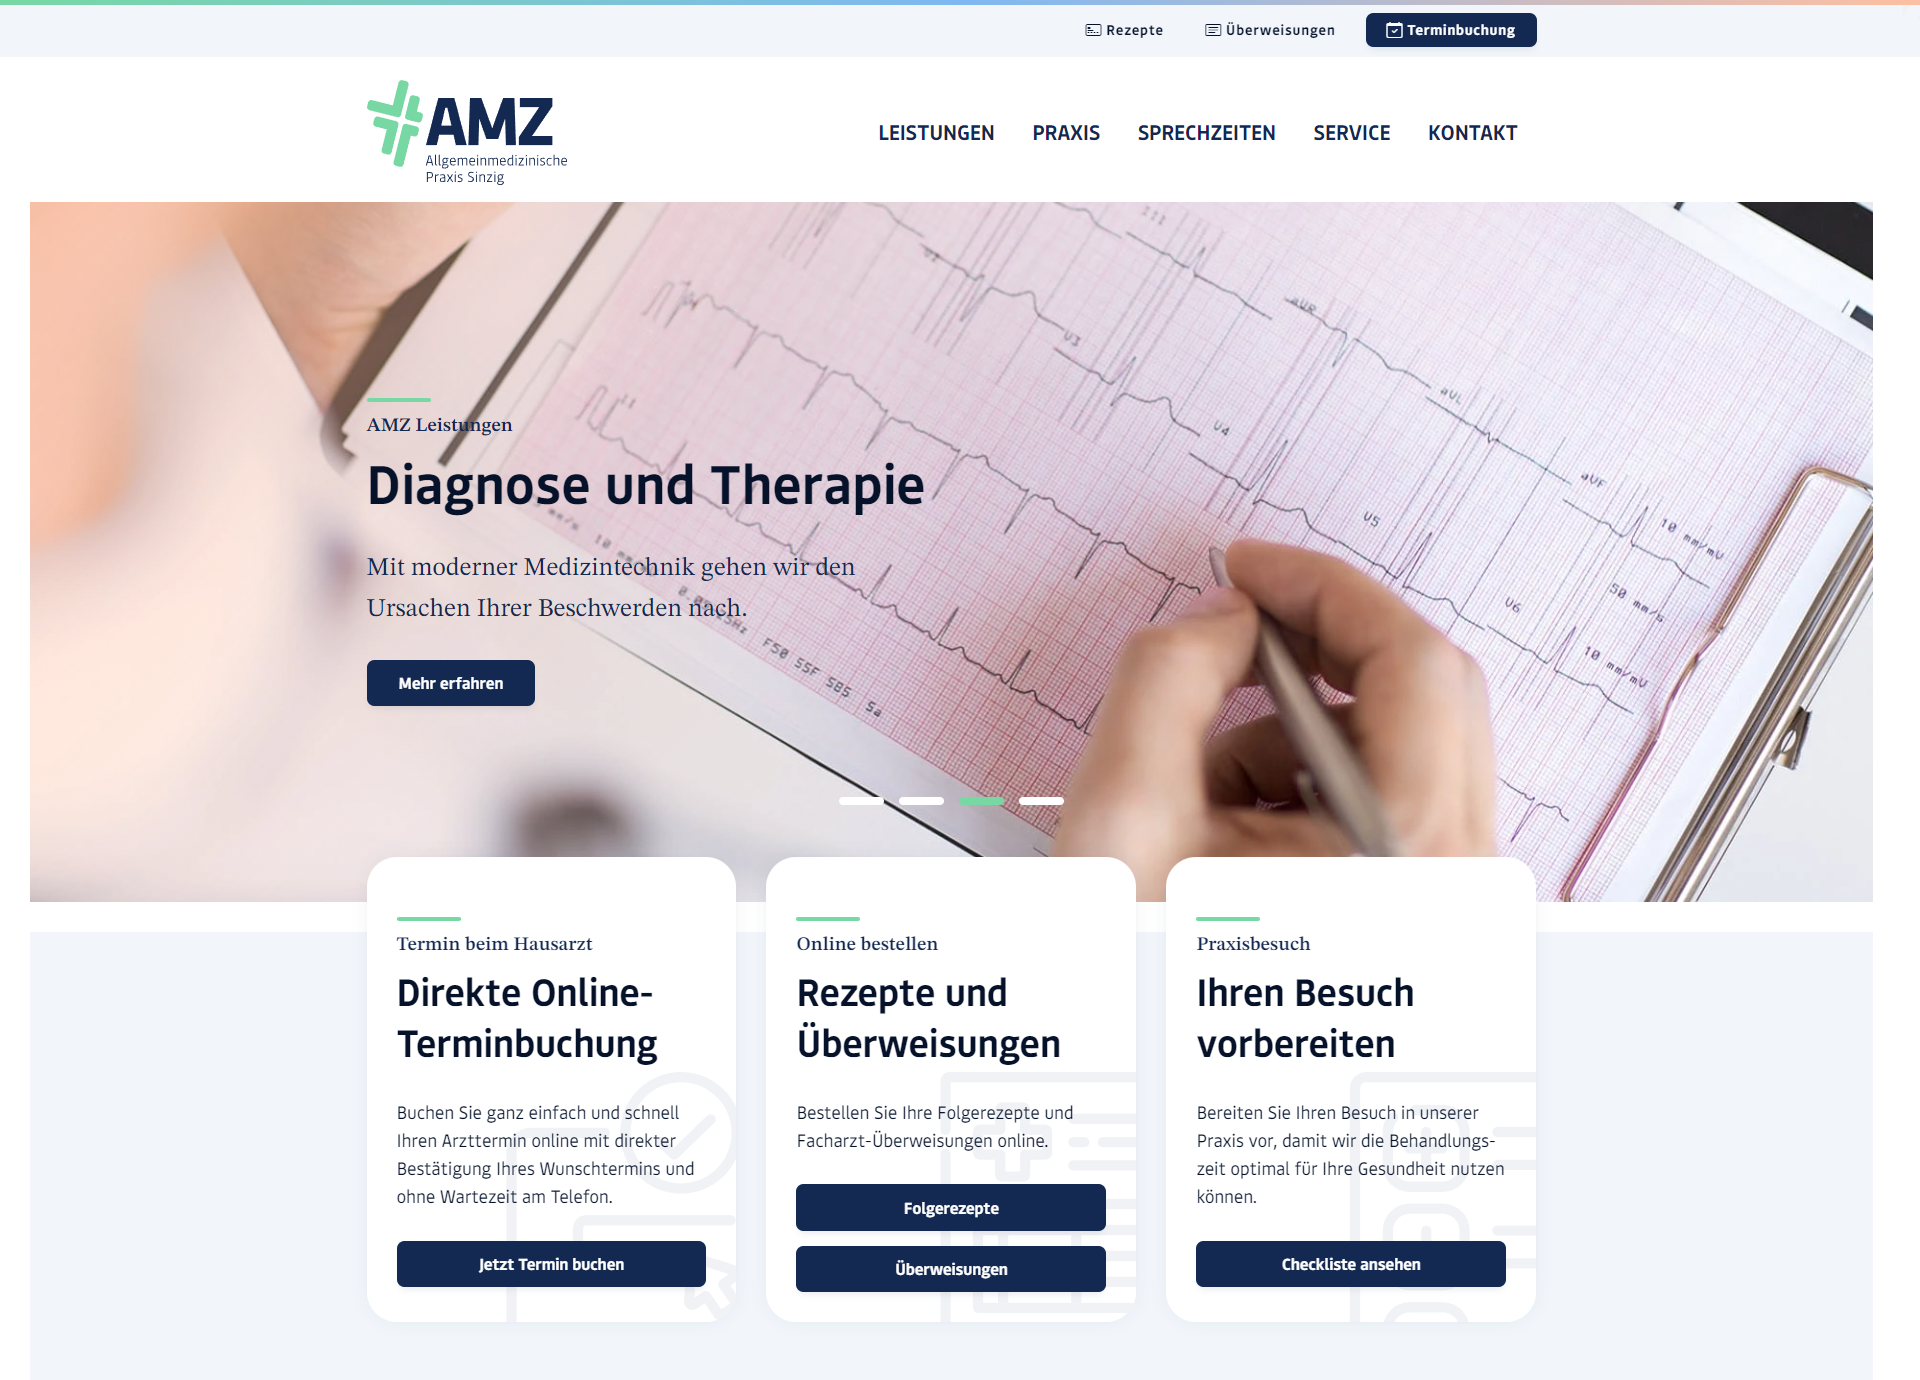 AMZ – Allgemeinmedizinische Praxis